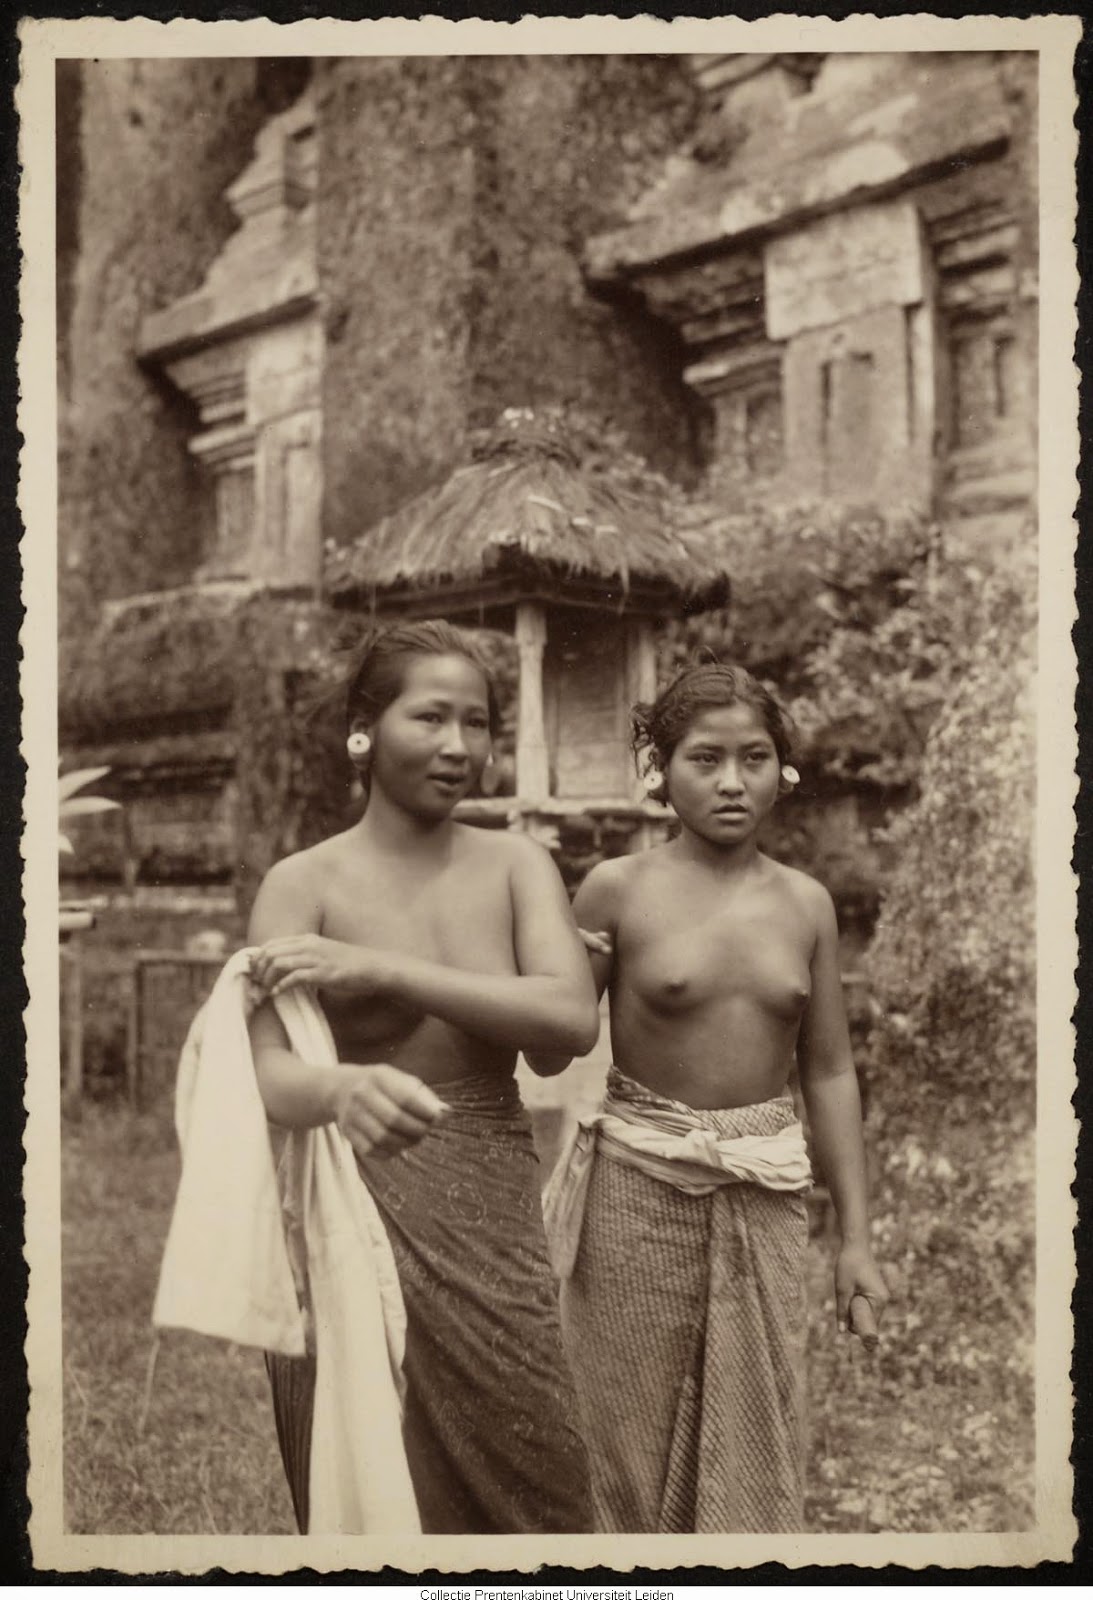 kumpulan-foto-gadis-bali-tempoe-doeloe-telanjang-dada-tahun-1910-1930-balinese-topless-girls-vintage-photography-23